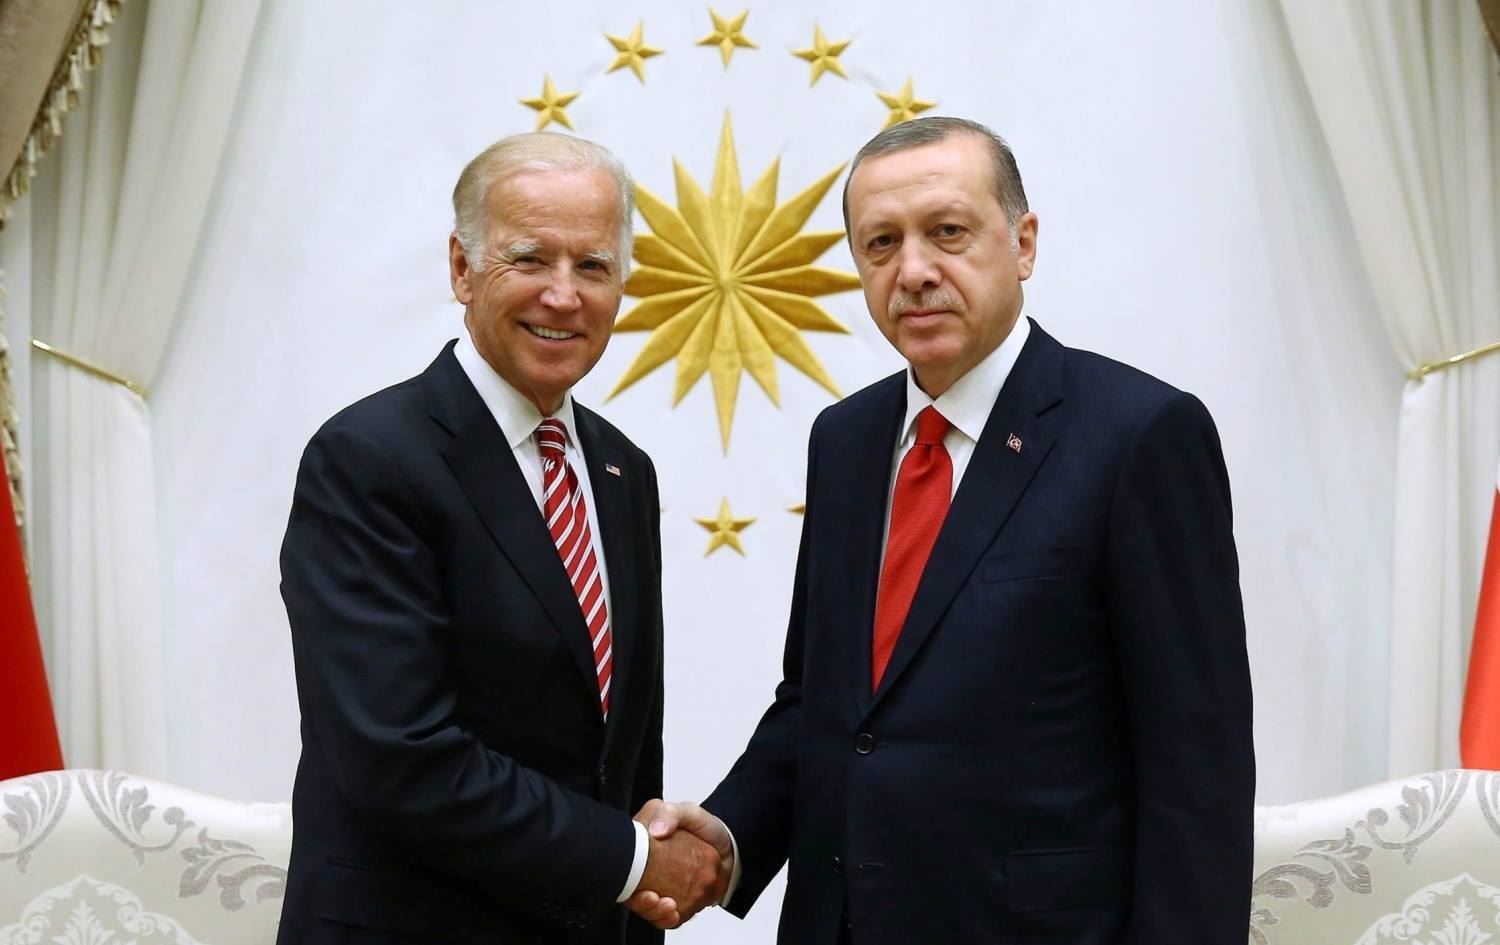 بايدن لأردوغان : أتطلع إلى مواصلة العمل معا كحلفاء في الناتو بشأن القضايا الثنائية والتحديات العالمية المشتركة